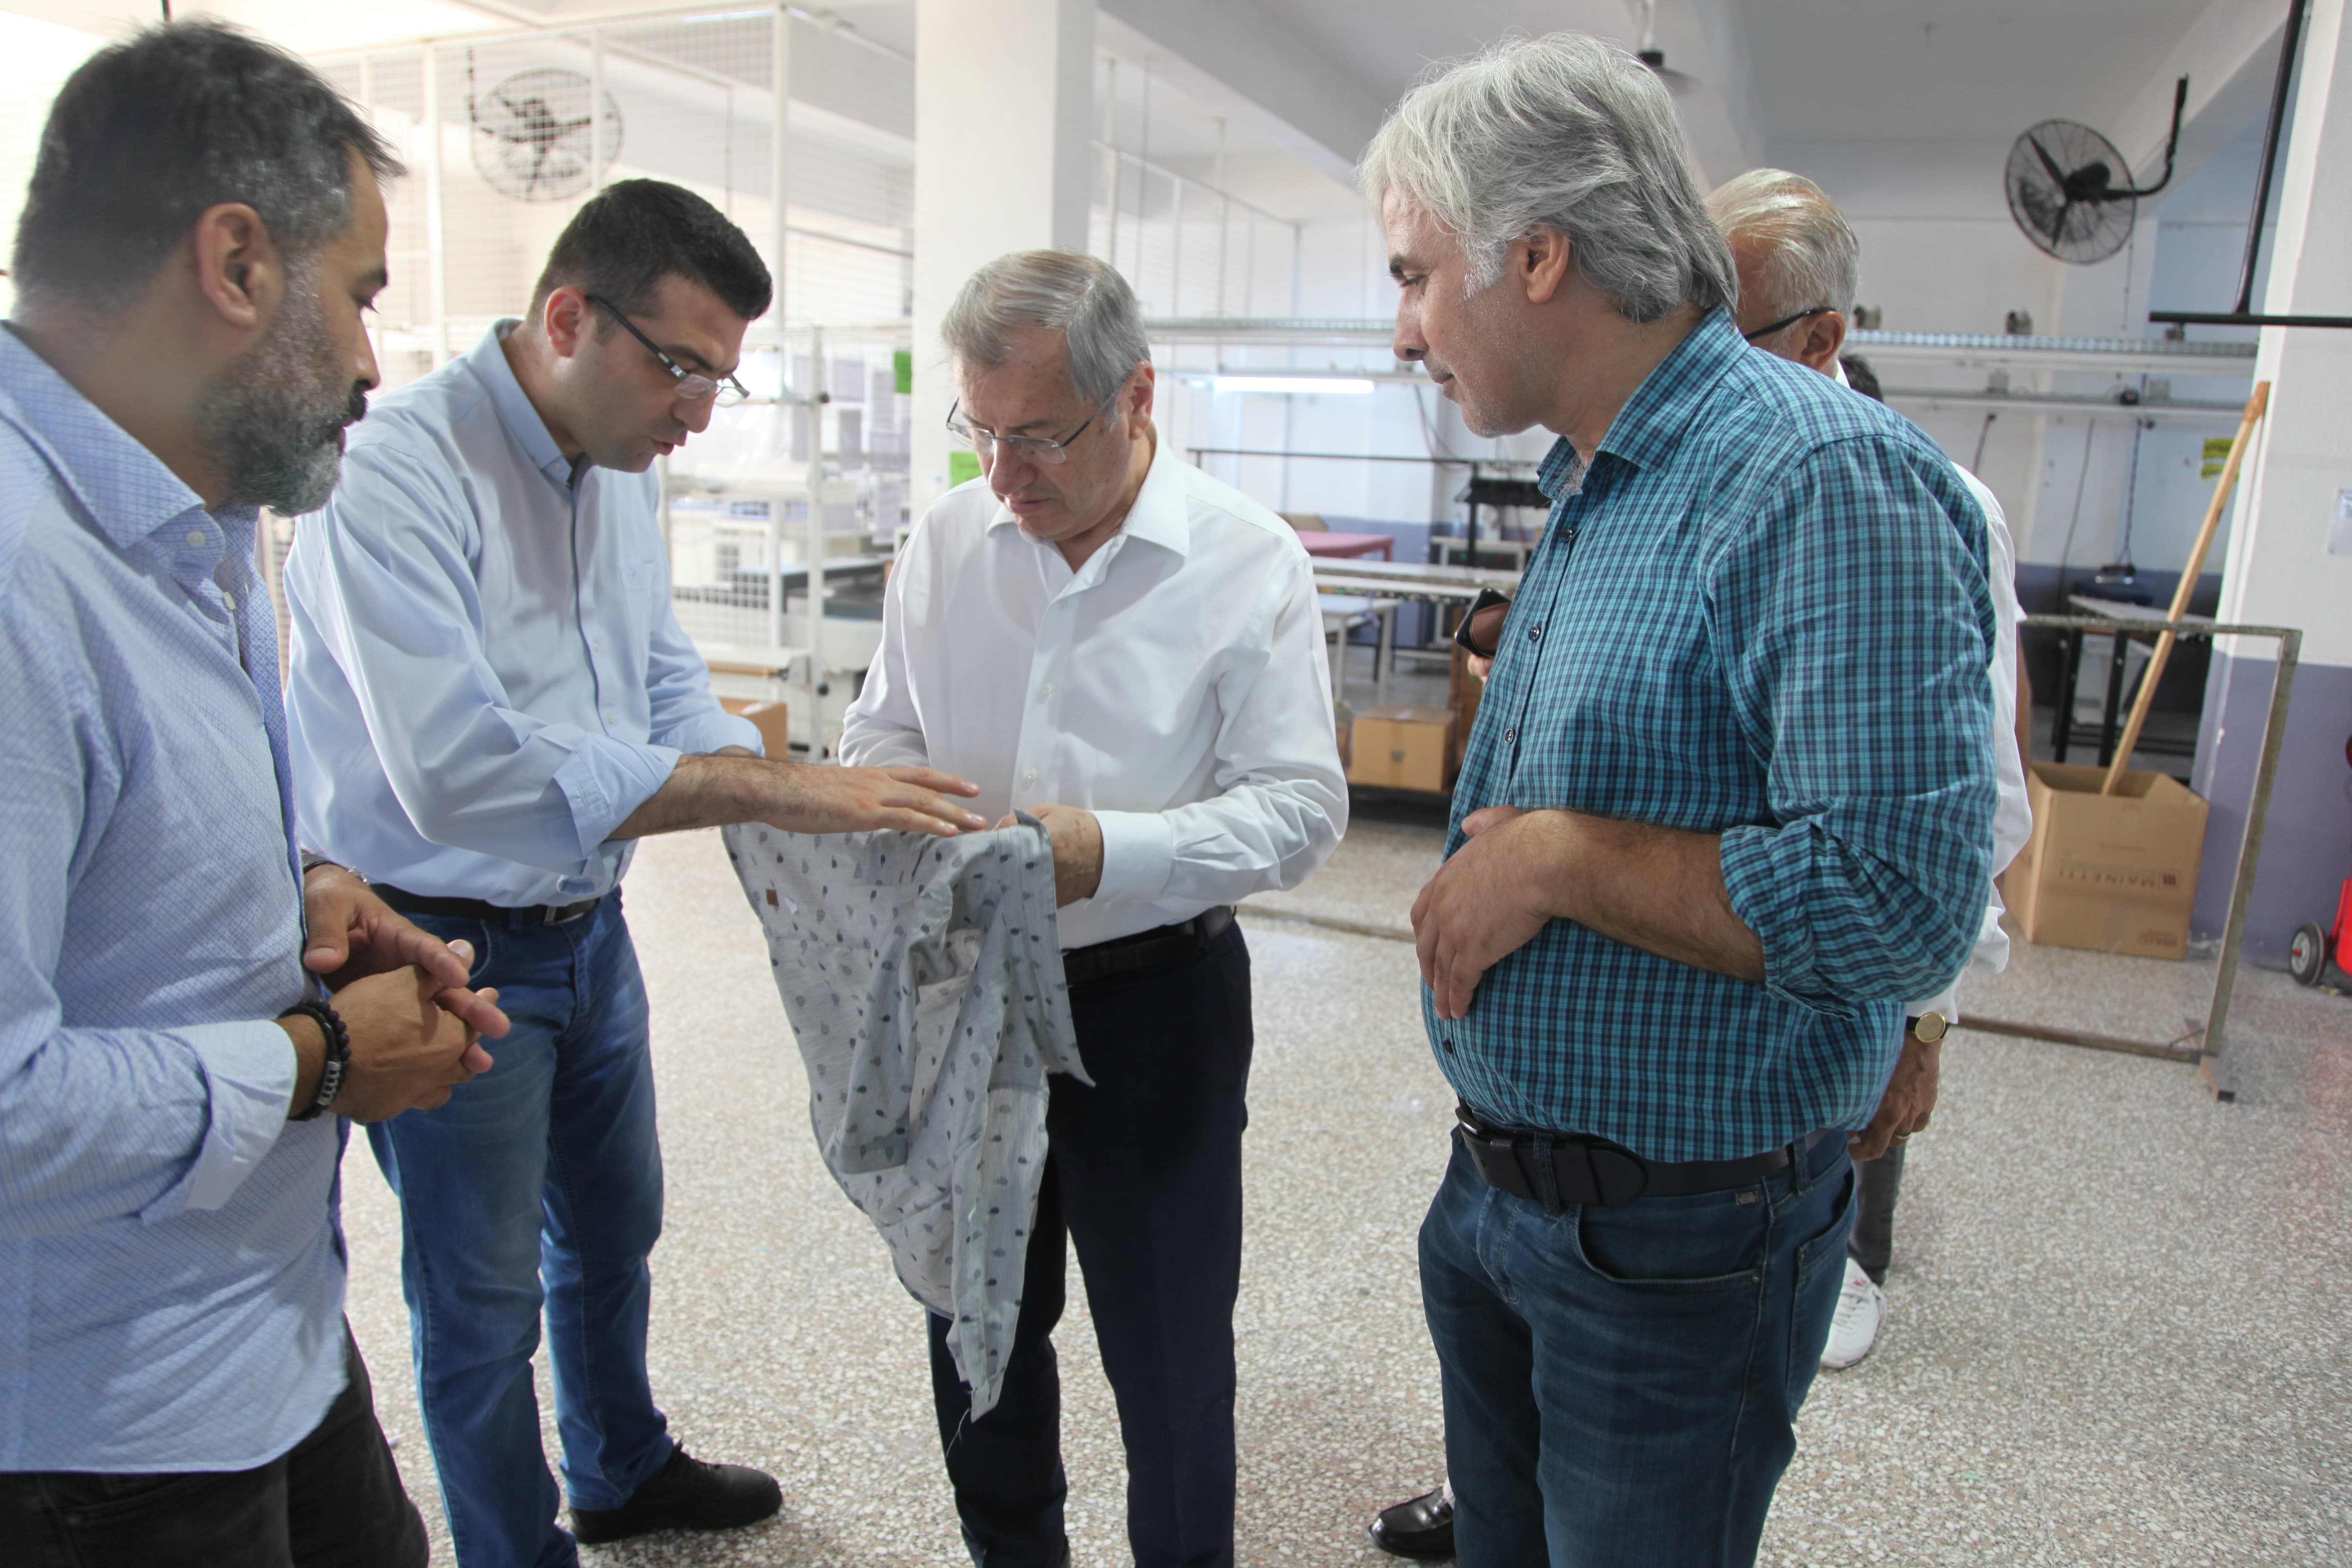 Adana Ticaret Odası Yönetim Kurulu Başkanı Atila Menevşe: “Hazır Giyimde Dünya Markalarına Üretiyoruz”